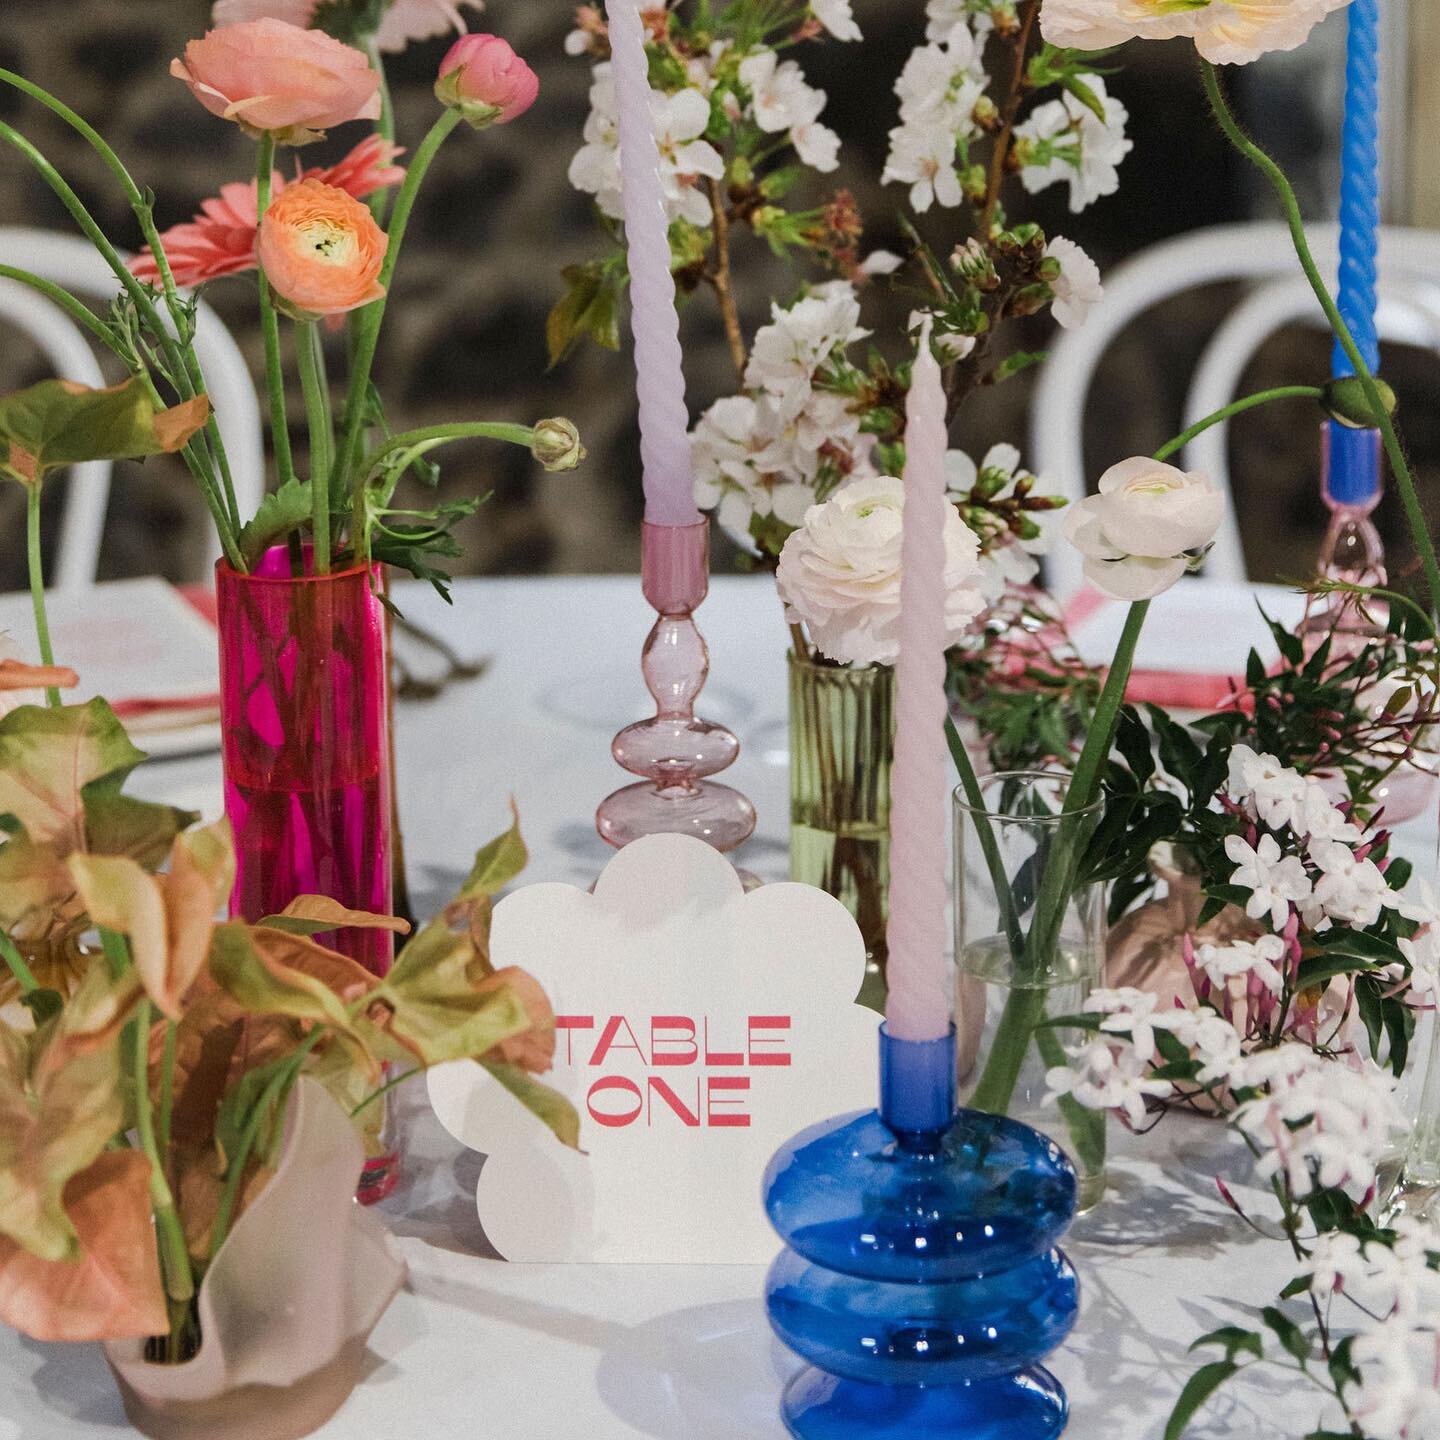 Cute table numbers in a meadow of flowers 🌸 
~
#inkertinker #weddingstationery #weddinginspo #weddingplanner #engaged #weddingday #weddingflowers #aucklandweddings #stationerydesigner #tablenumbers